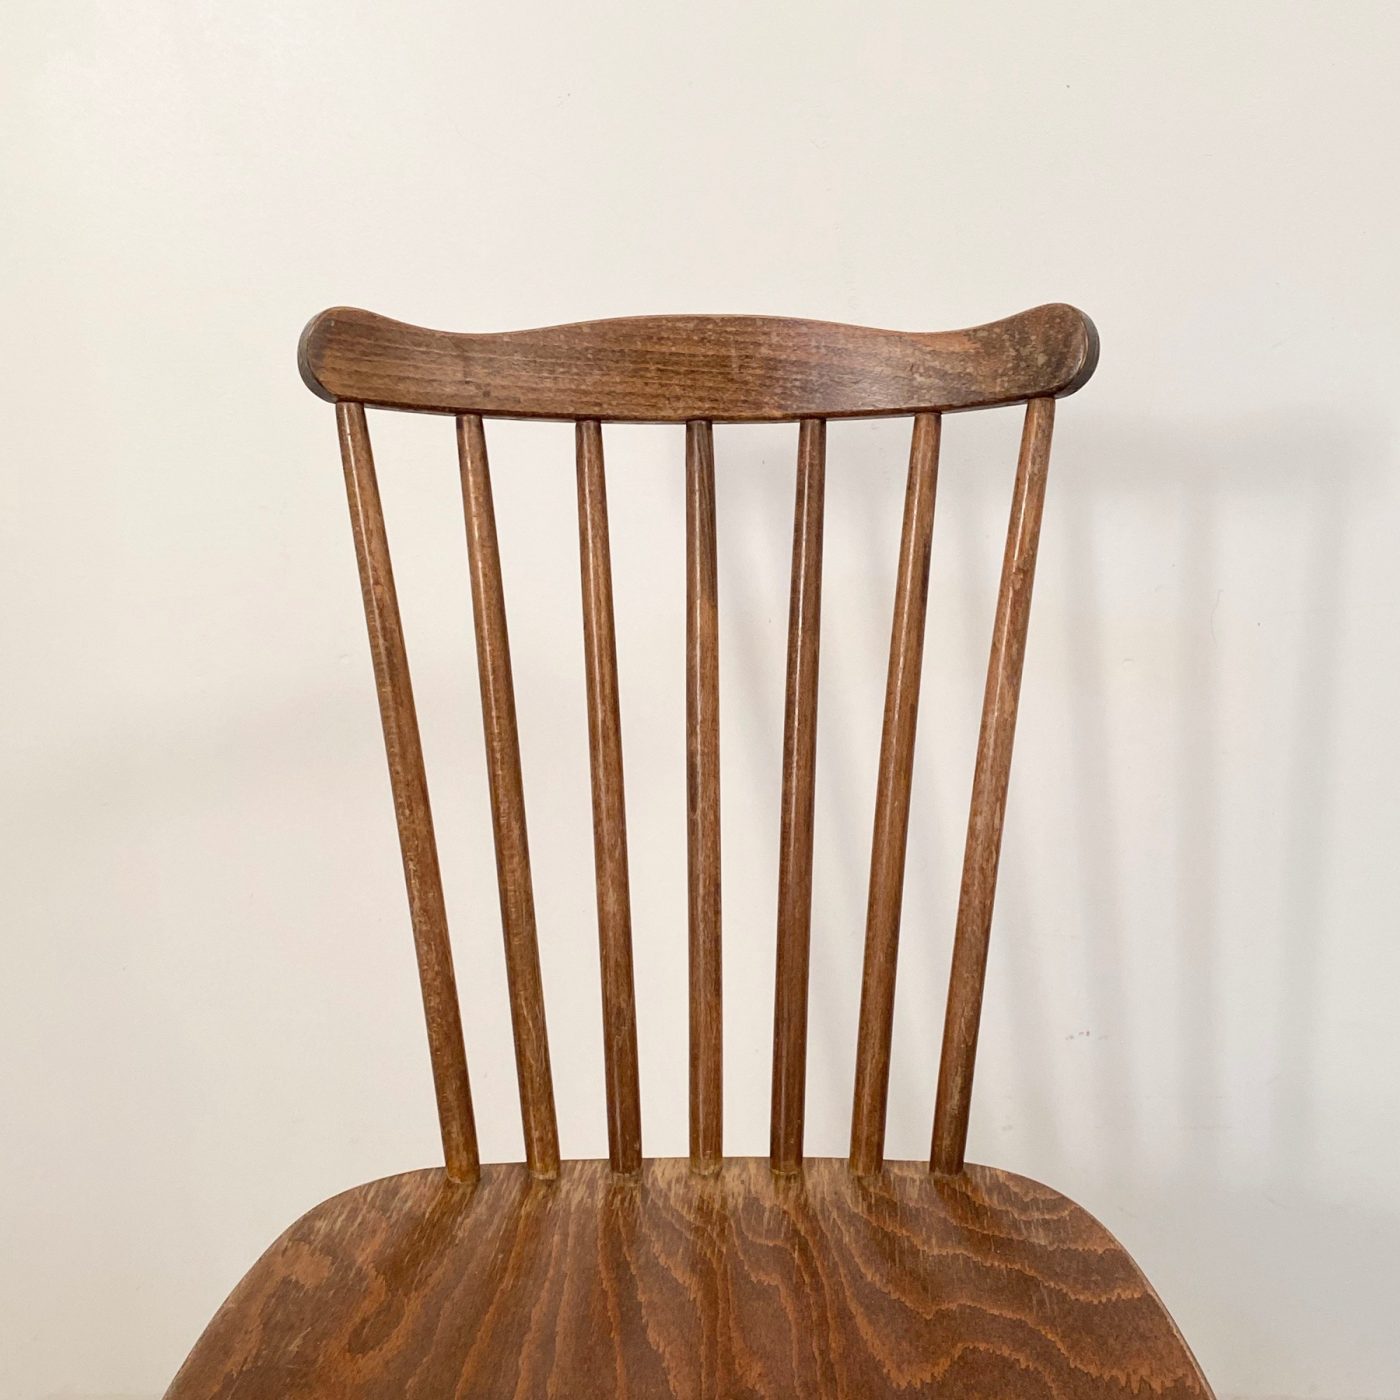 objet-vagabond-bistrot-chairs0003